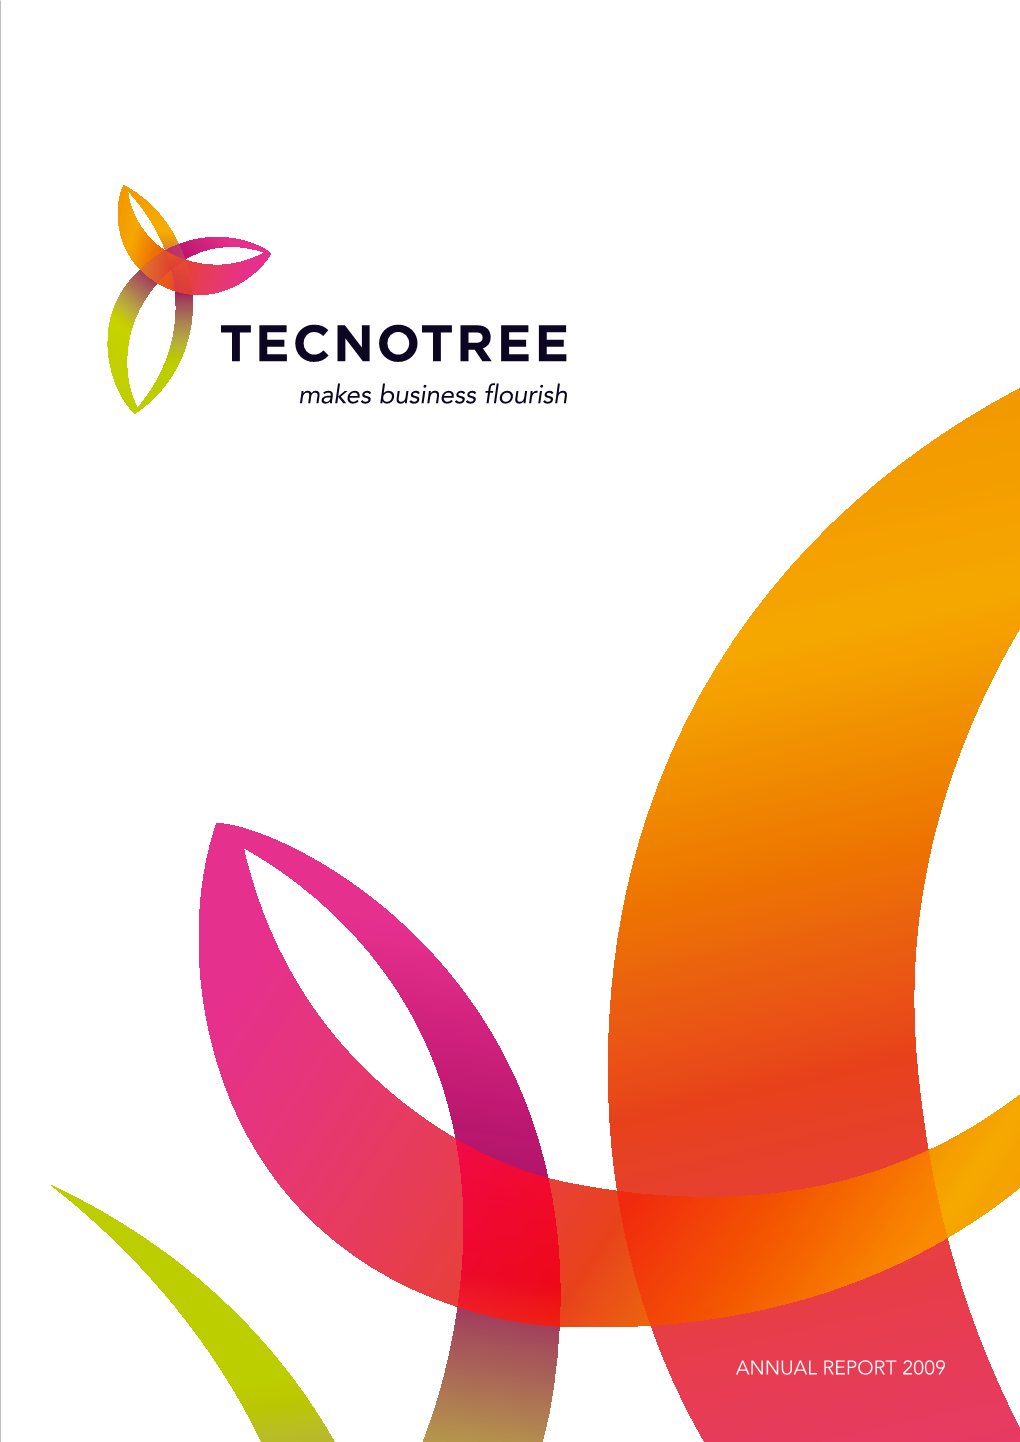 Annual Report 2009 Tecnotree 2009 Tecnotree in Brief 2